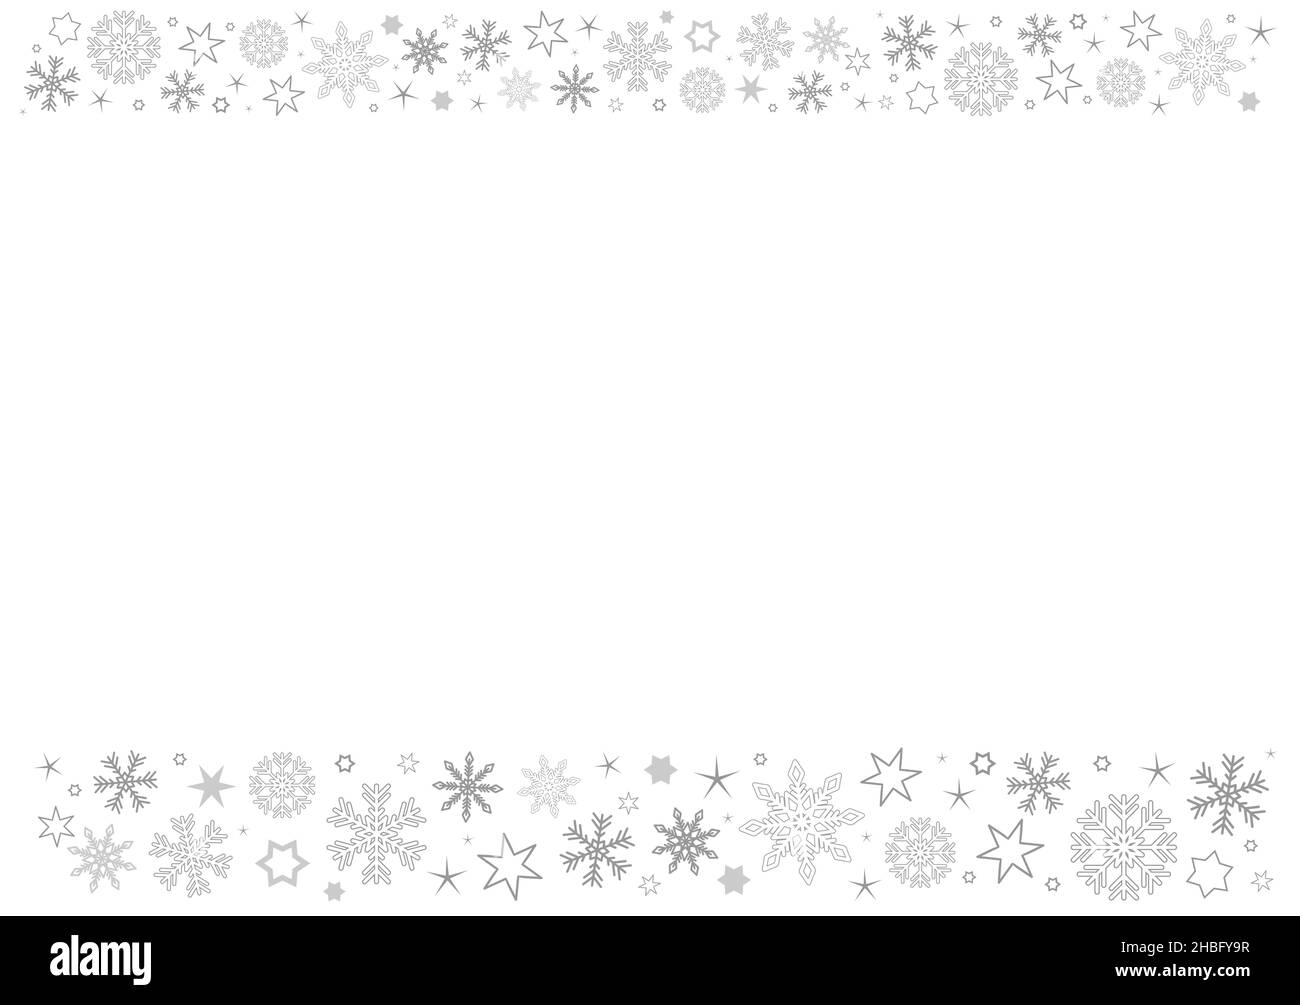 Der leere horizontale weiße Papierhintergrund mit grauen Winter Schneeflocken Kopf- und Fußzeile Stock Vektor